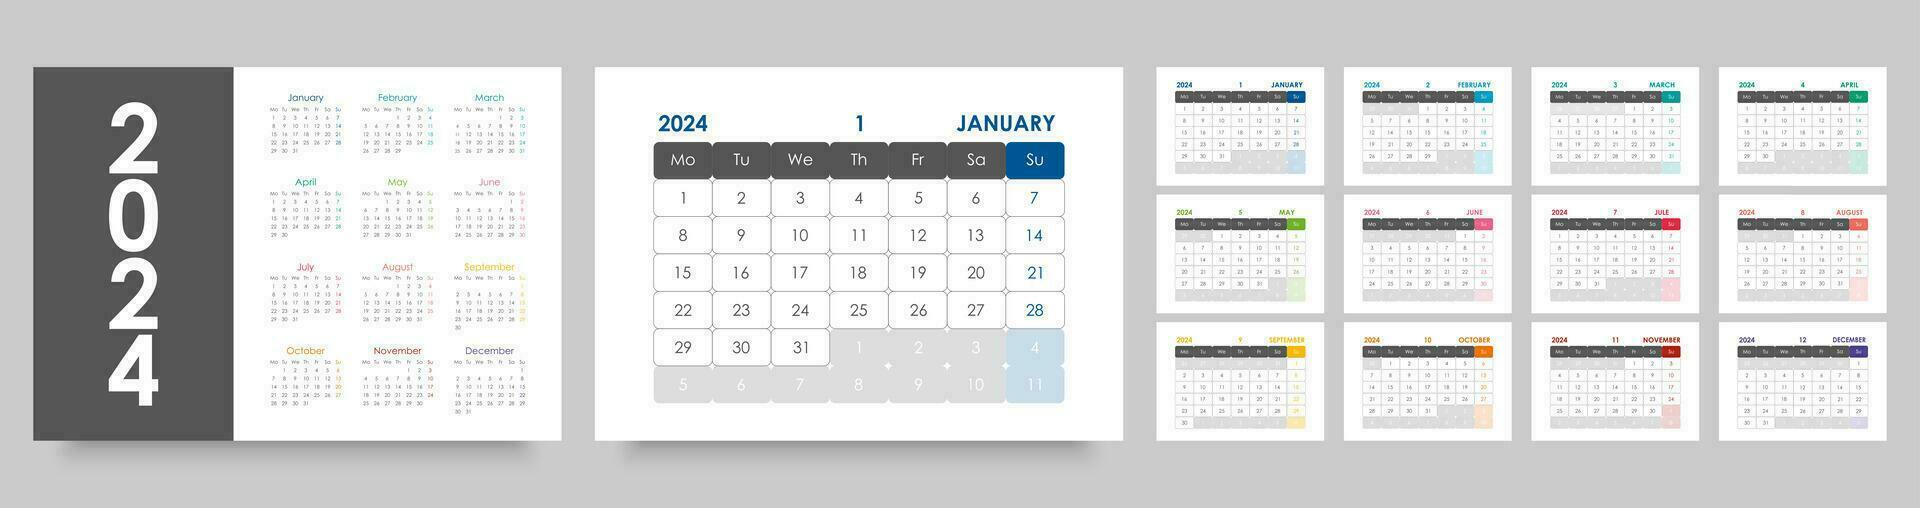 Kalender 2024 Jahr. Schreibtisch oder Mauer Kalender Vorlage, Landschaft Orientierung, Englisch Sprache. das Woche beginnt auf Montag. vektor